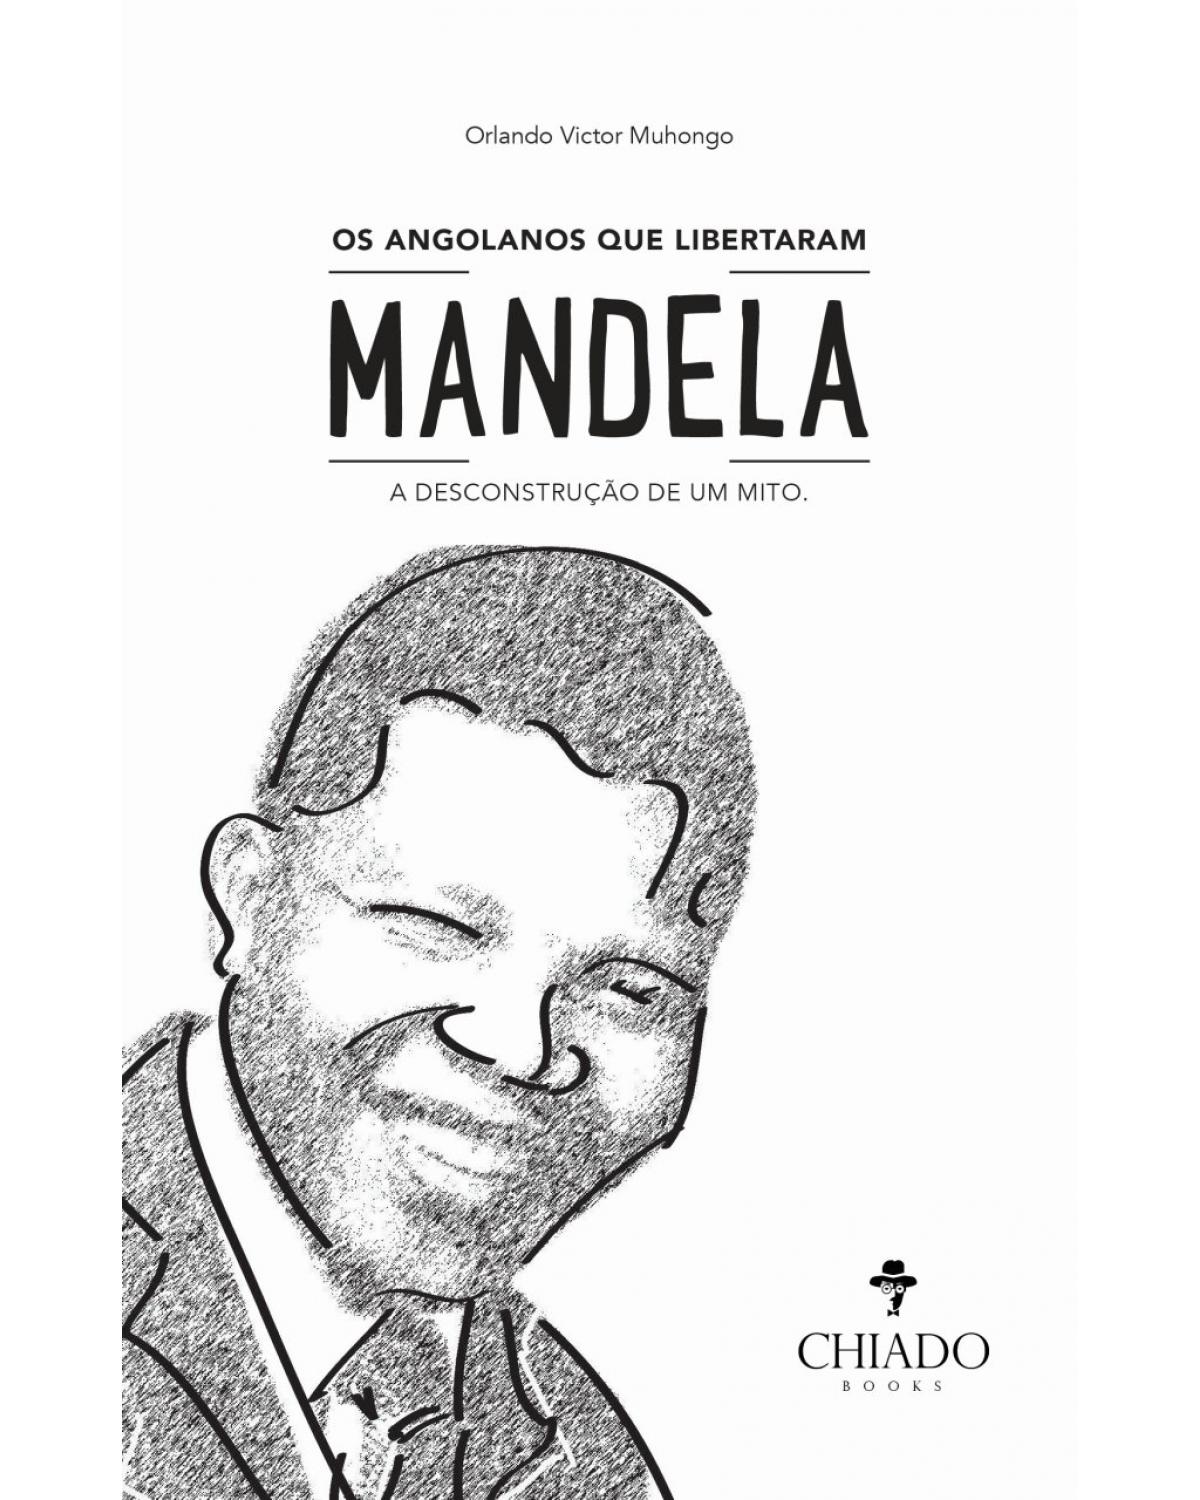 Os angolanos que libertaram Mandela - a desconstrução de um mito - 1ª Edição | 2019